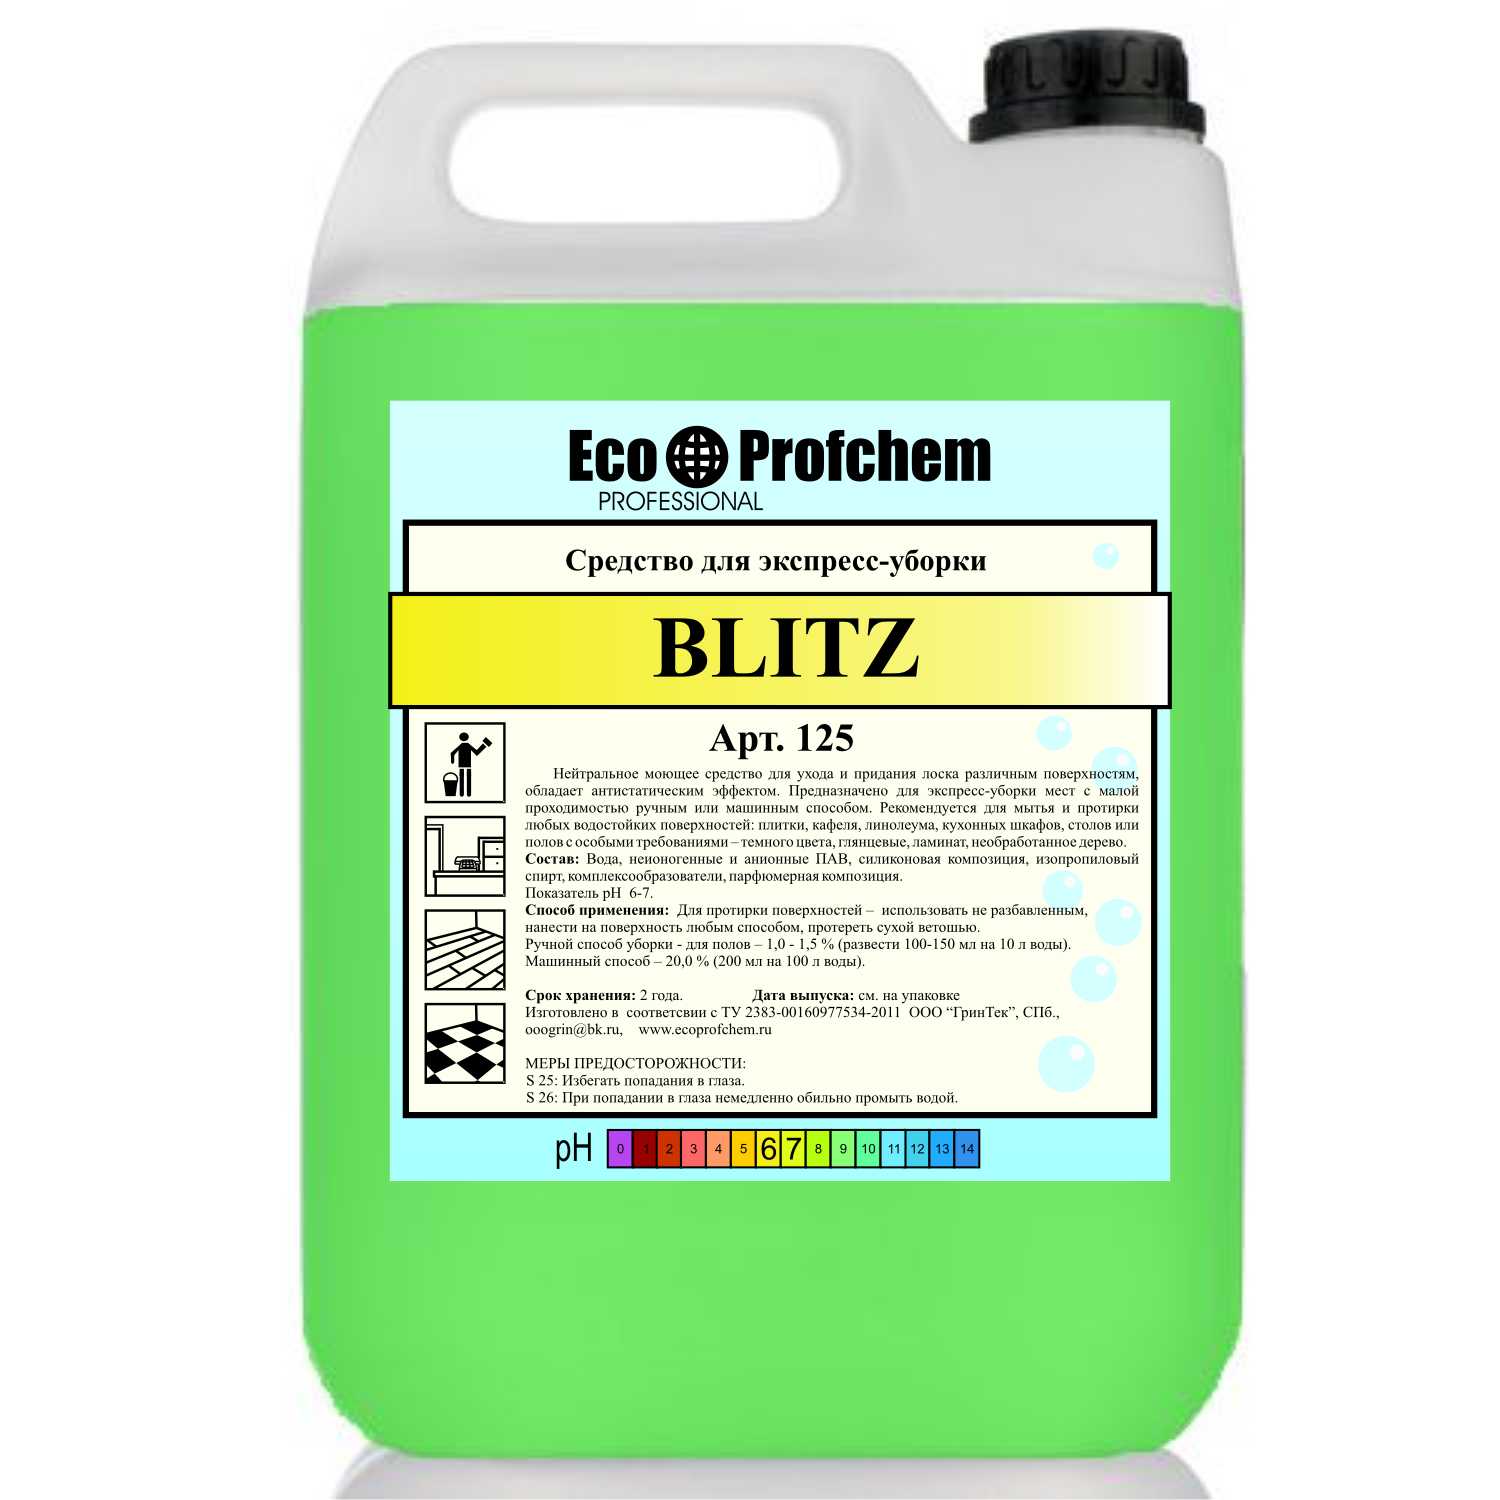 BLITZ - (EcoProfChem) средство для экспресс-уборки дома и офиса